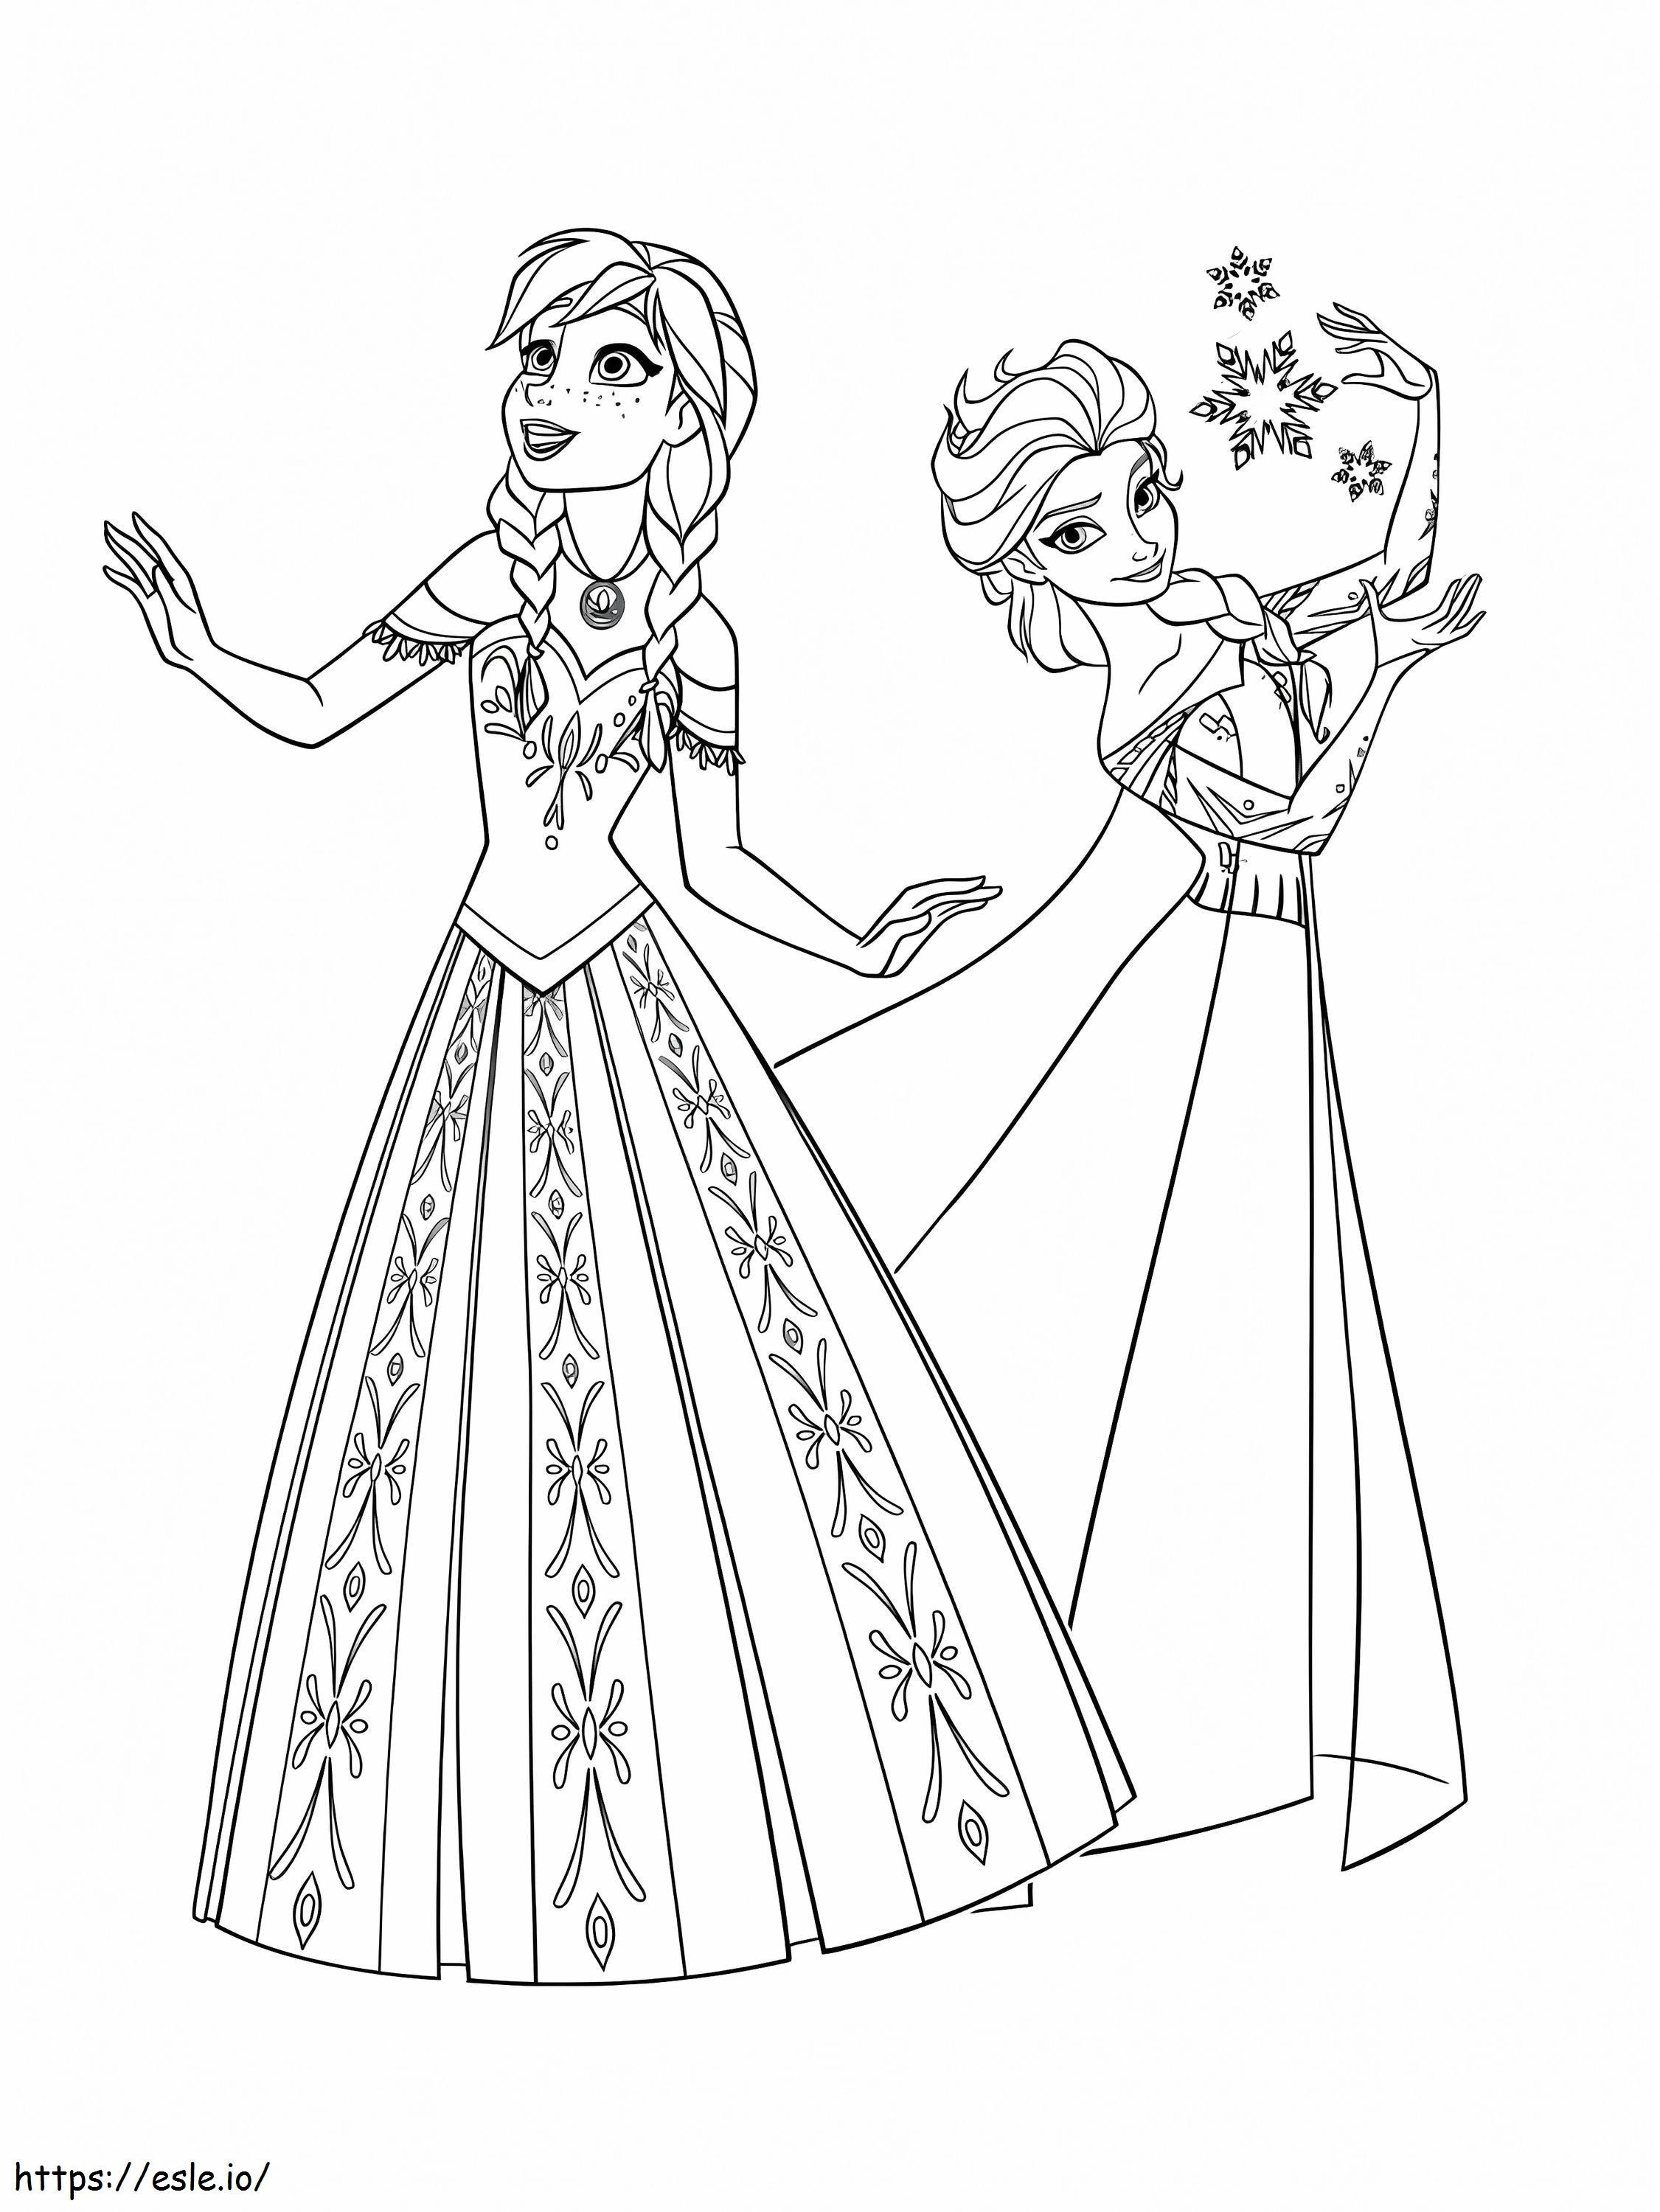 Güzel Anna ve Elsa boyama